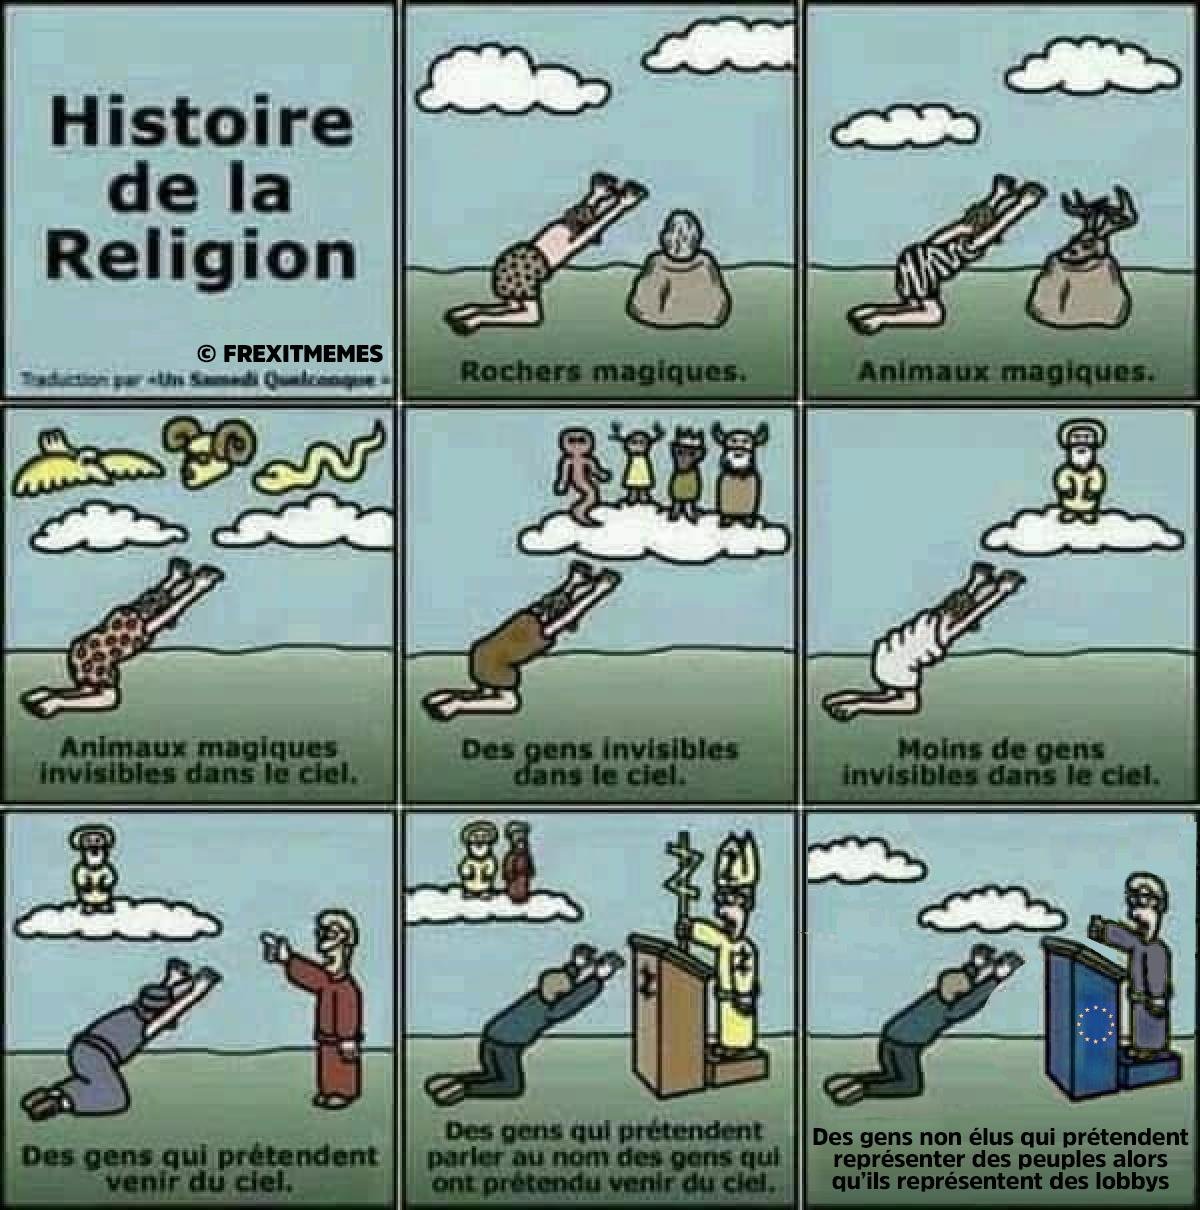 L'histoire des religions résummé en 9 images. EwsogoMUUAMdLMn?format=jpg&name=large